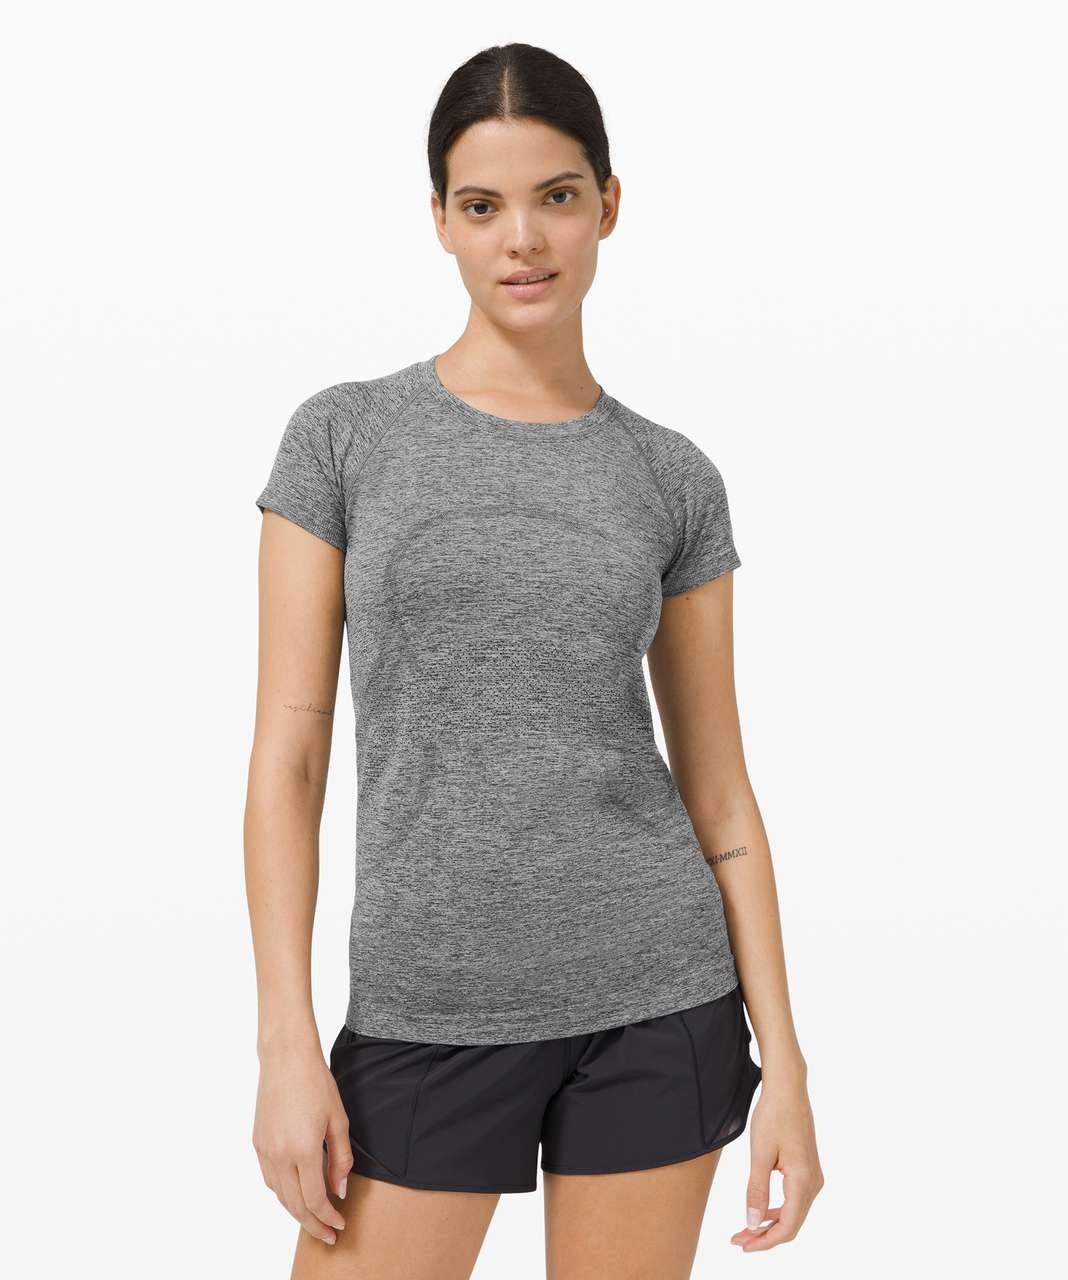 Lululemon Swiftly Tech Short Sleeve Shirt 2.0, Golf Equipment: Clubs,  Balls, Bags